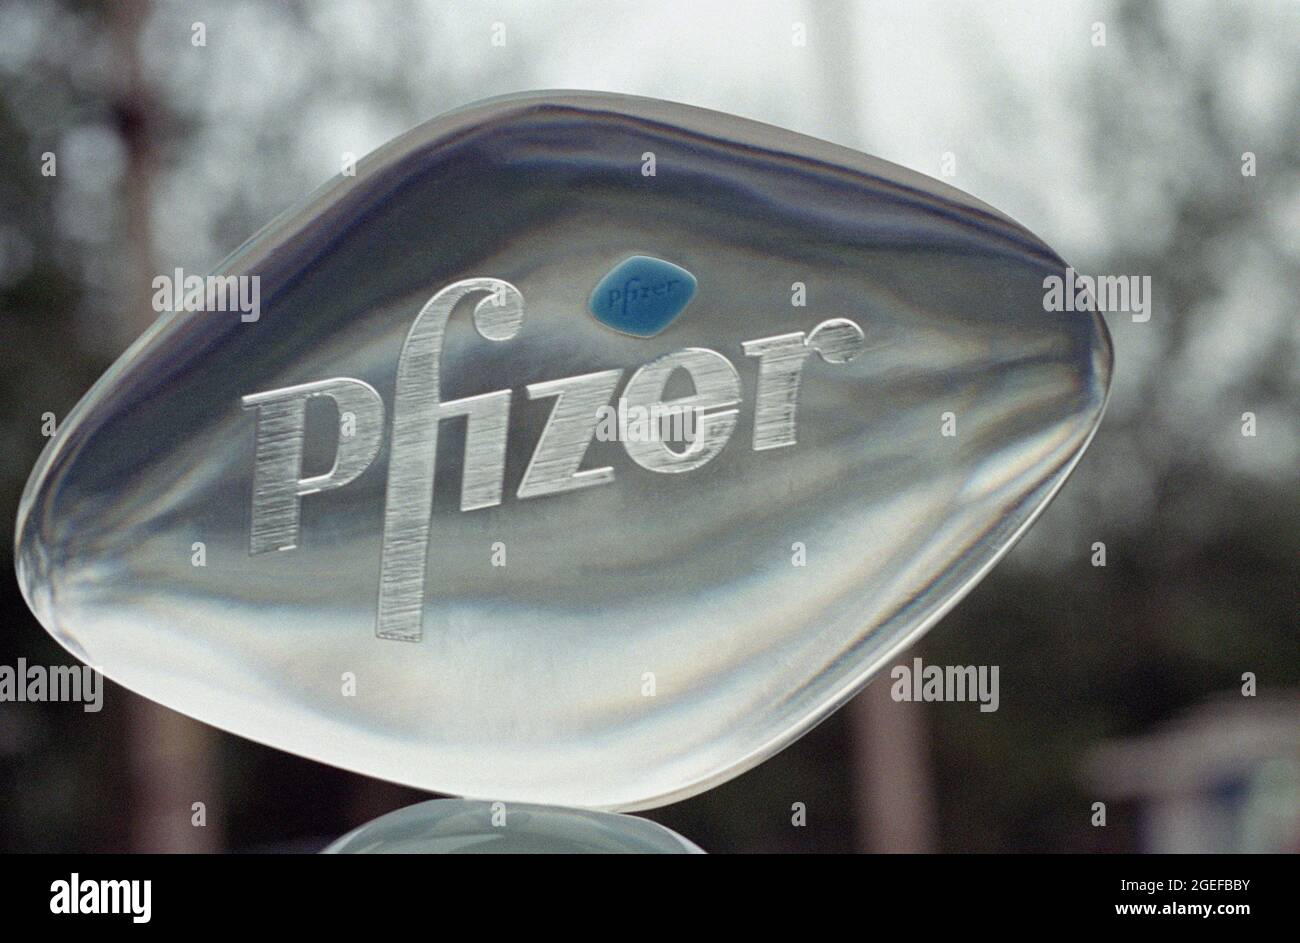 Una píldora Viagra está integrada en una plexiglás en forma de Viagra con el logotipo de Pfizer en la conferencia de prensa de Pfizer Viagra entrando en China continental en Beijing. Foto de stock